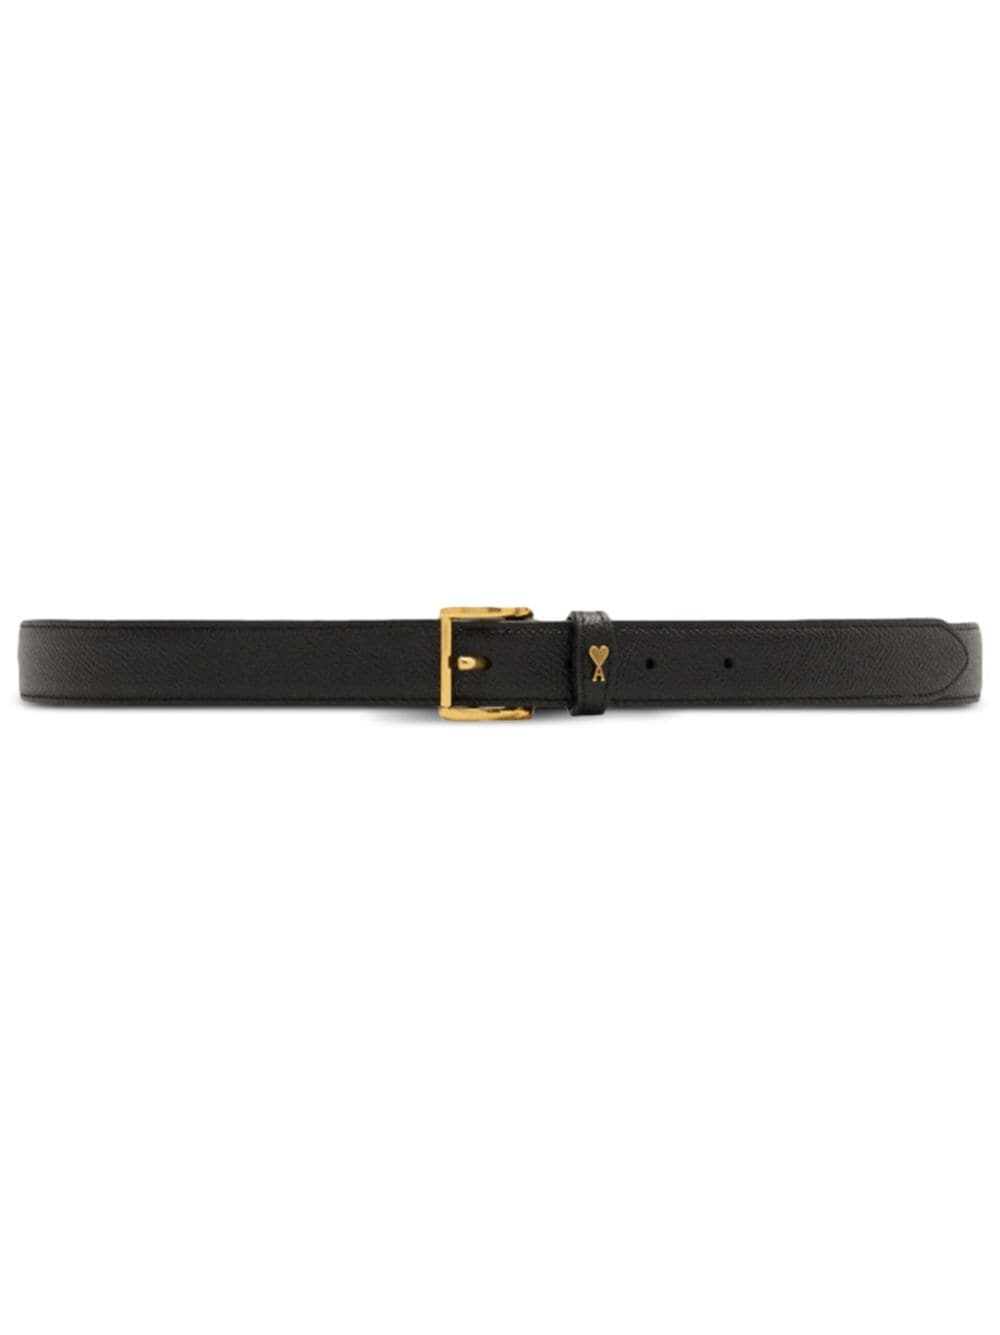 Ami Alexandre Mattiussi Paris Paris Leather Belt In Black